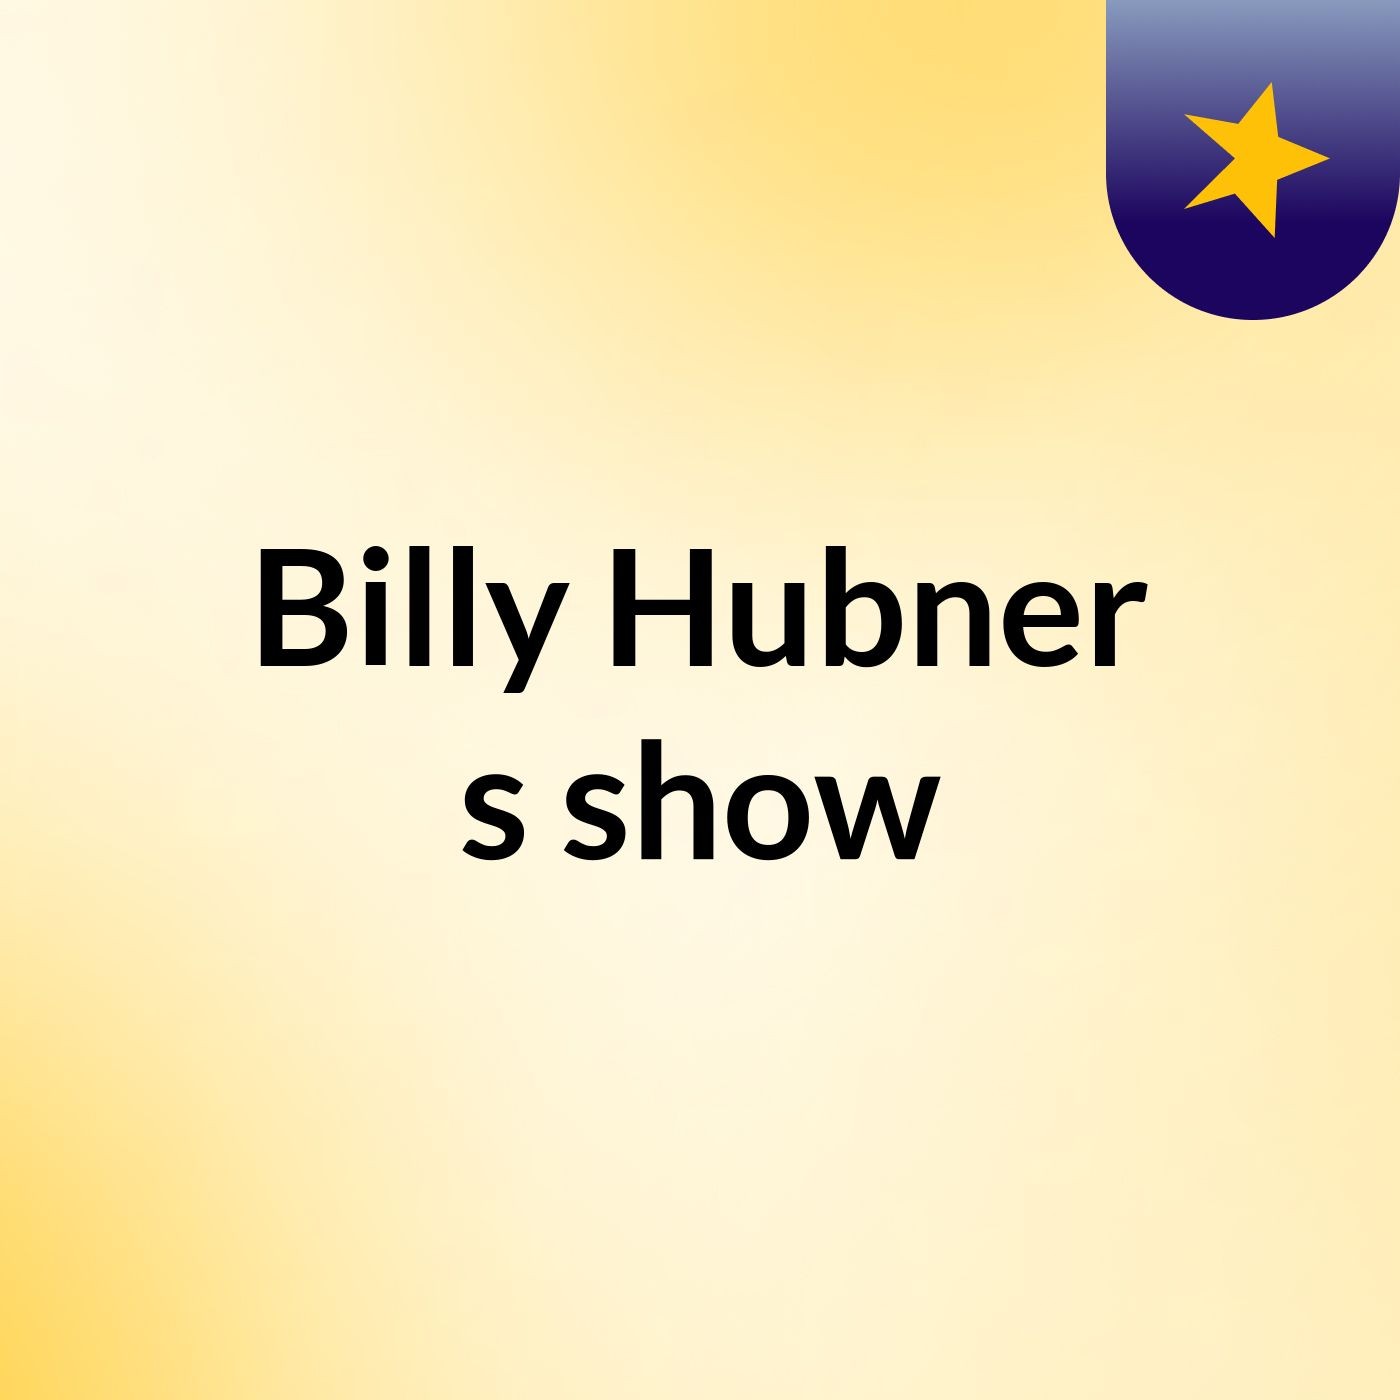 Billy Hubner's show